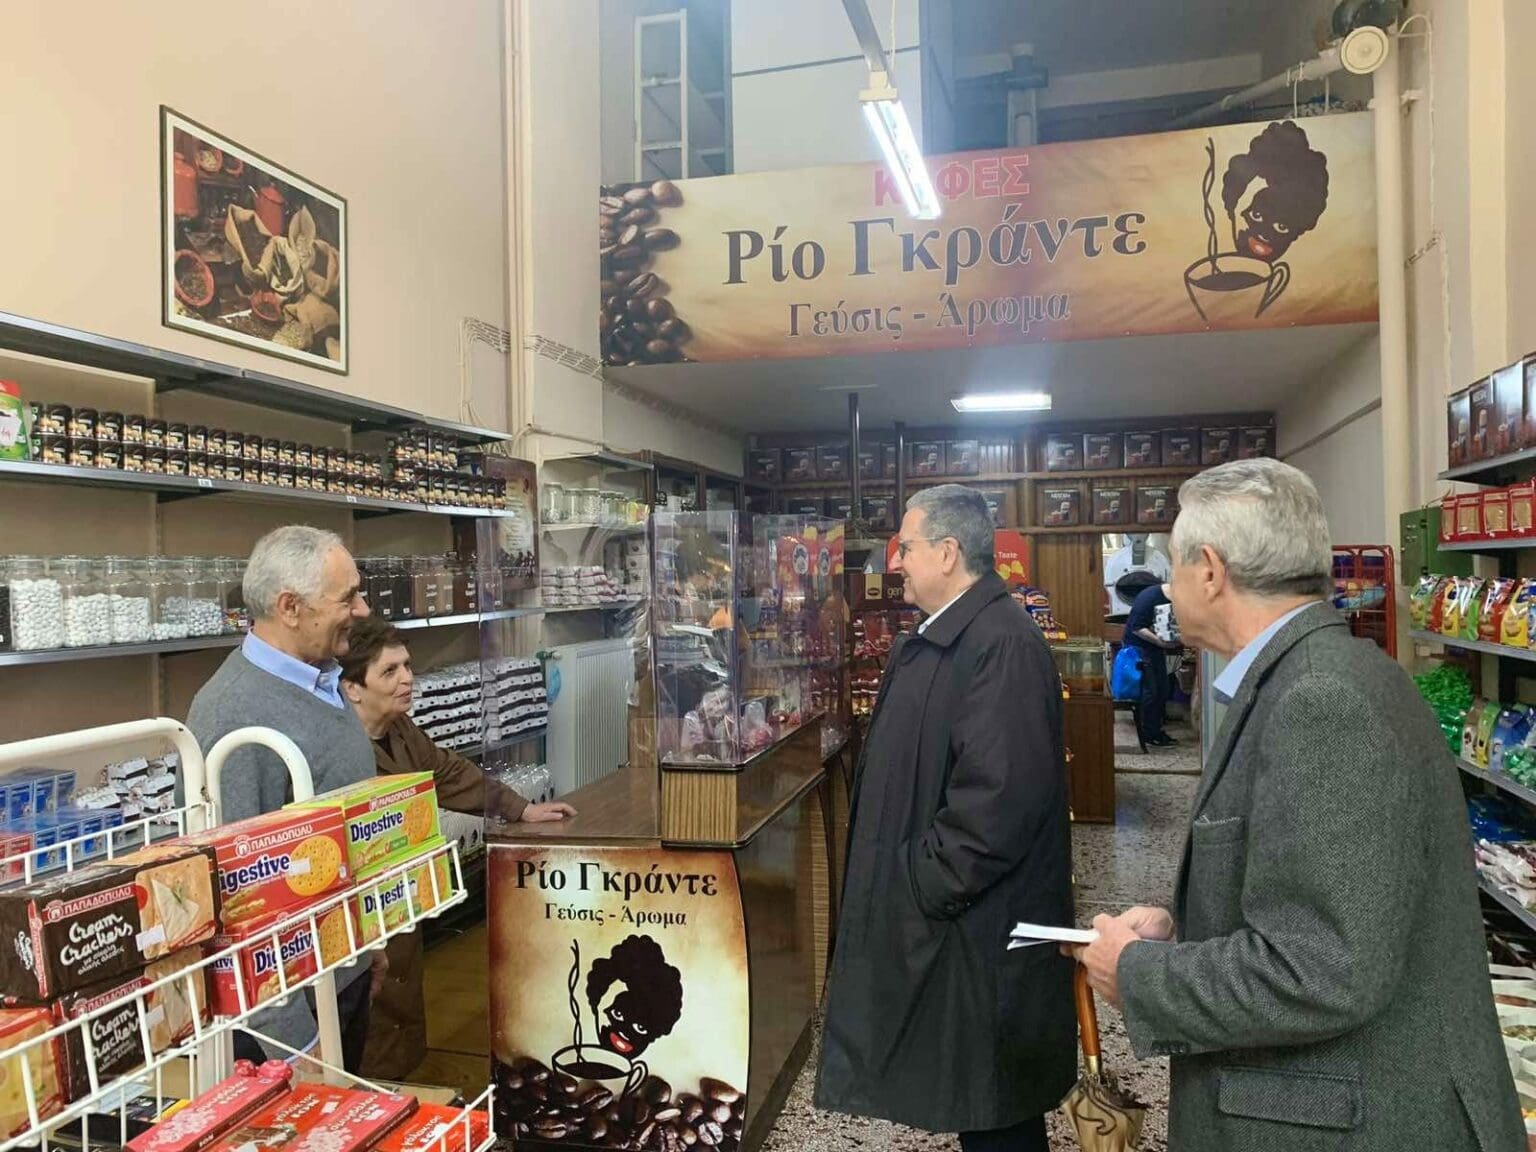 Στους δρόμους και στην αγορά της Πτολεμαΐδας βρέθηκε ο υποψήφιος βουλευτής Π.Ε. Κοζάνης με τη ΝΔ, Γιώργος Δακής.